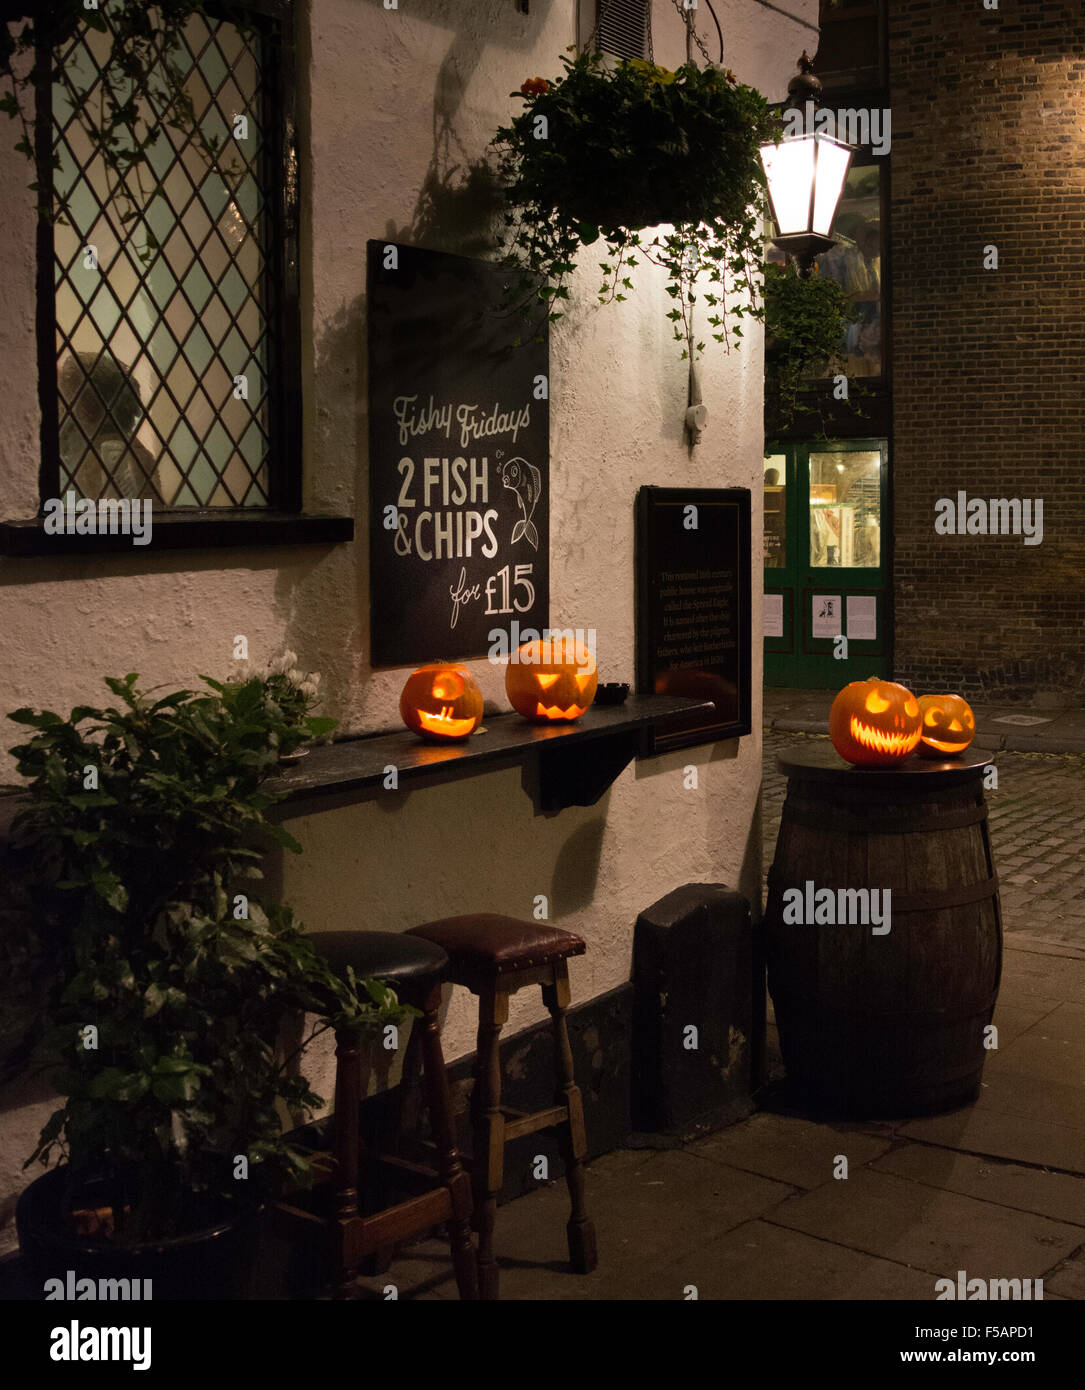 Citrouilles d'Halloween lumineux à l'extérieur d'un pub britannique à Londres, Royaume-Uni Banque D'Images